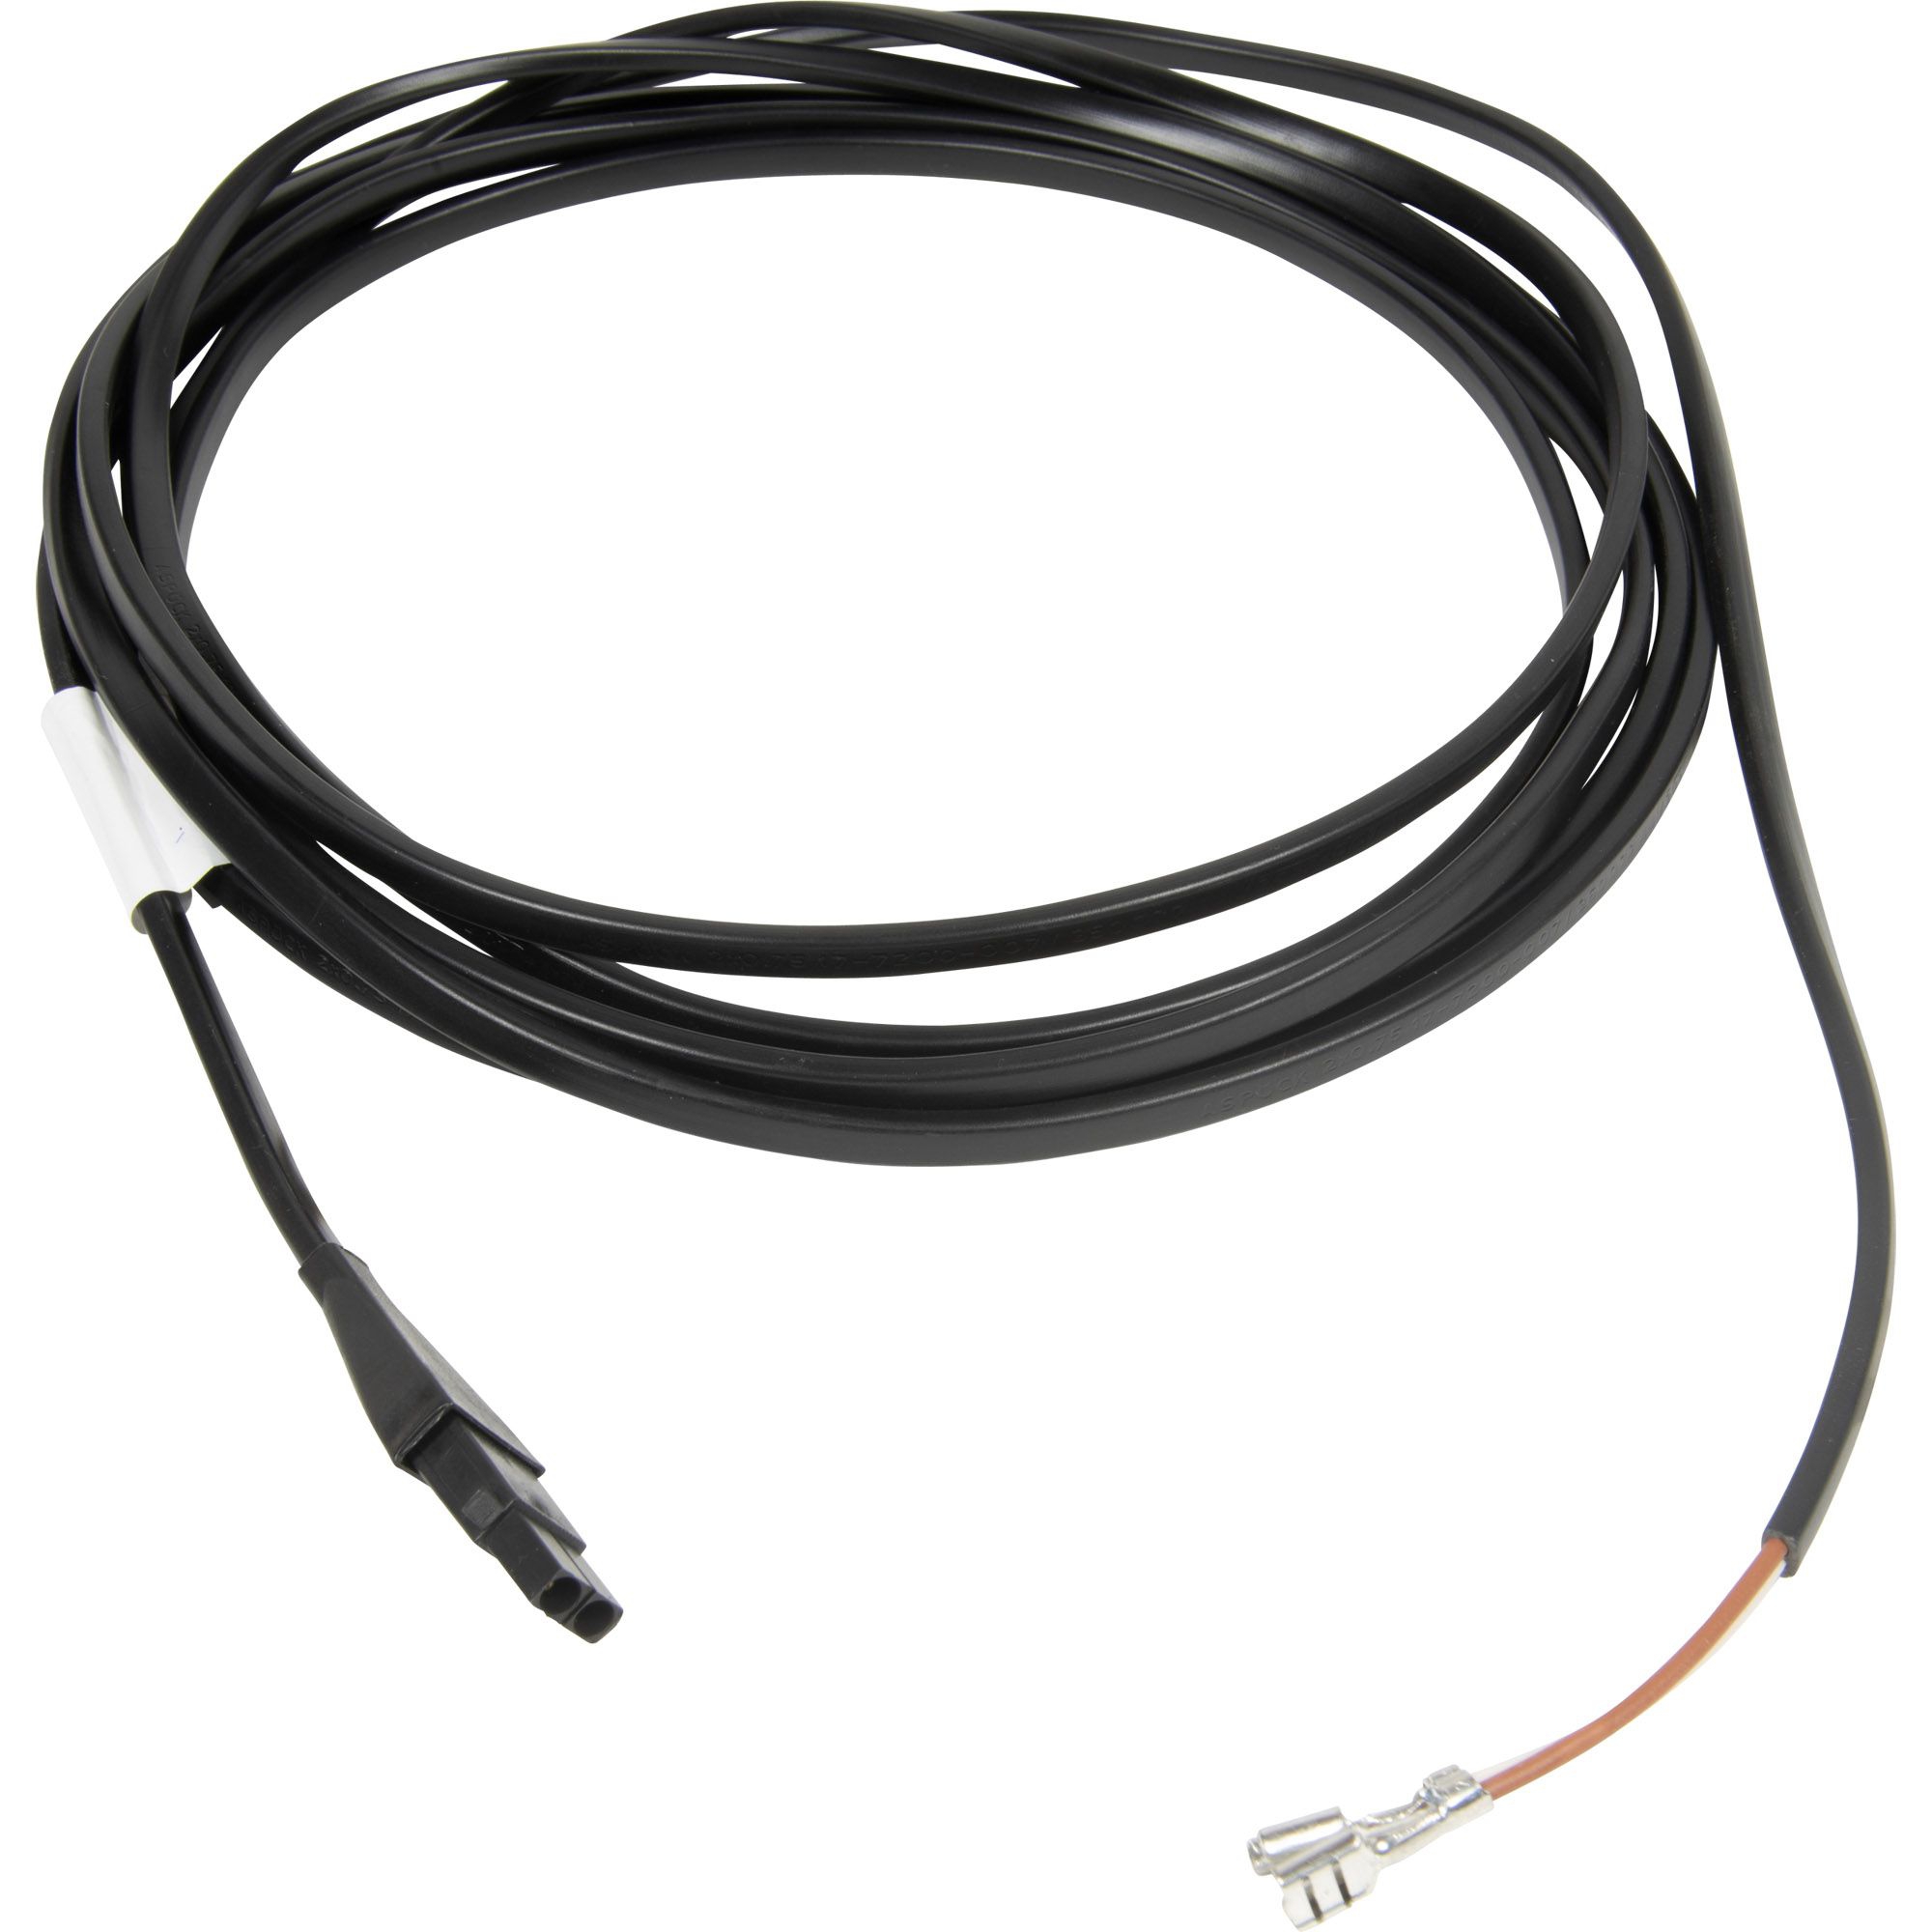 Kabel 3500 mm lang mit 2 poligen Stiftgehäuse